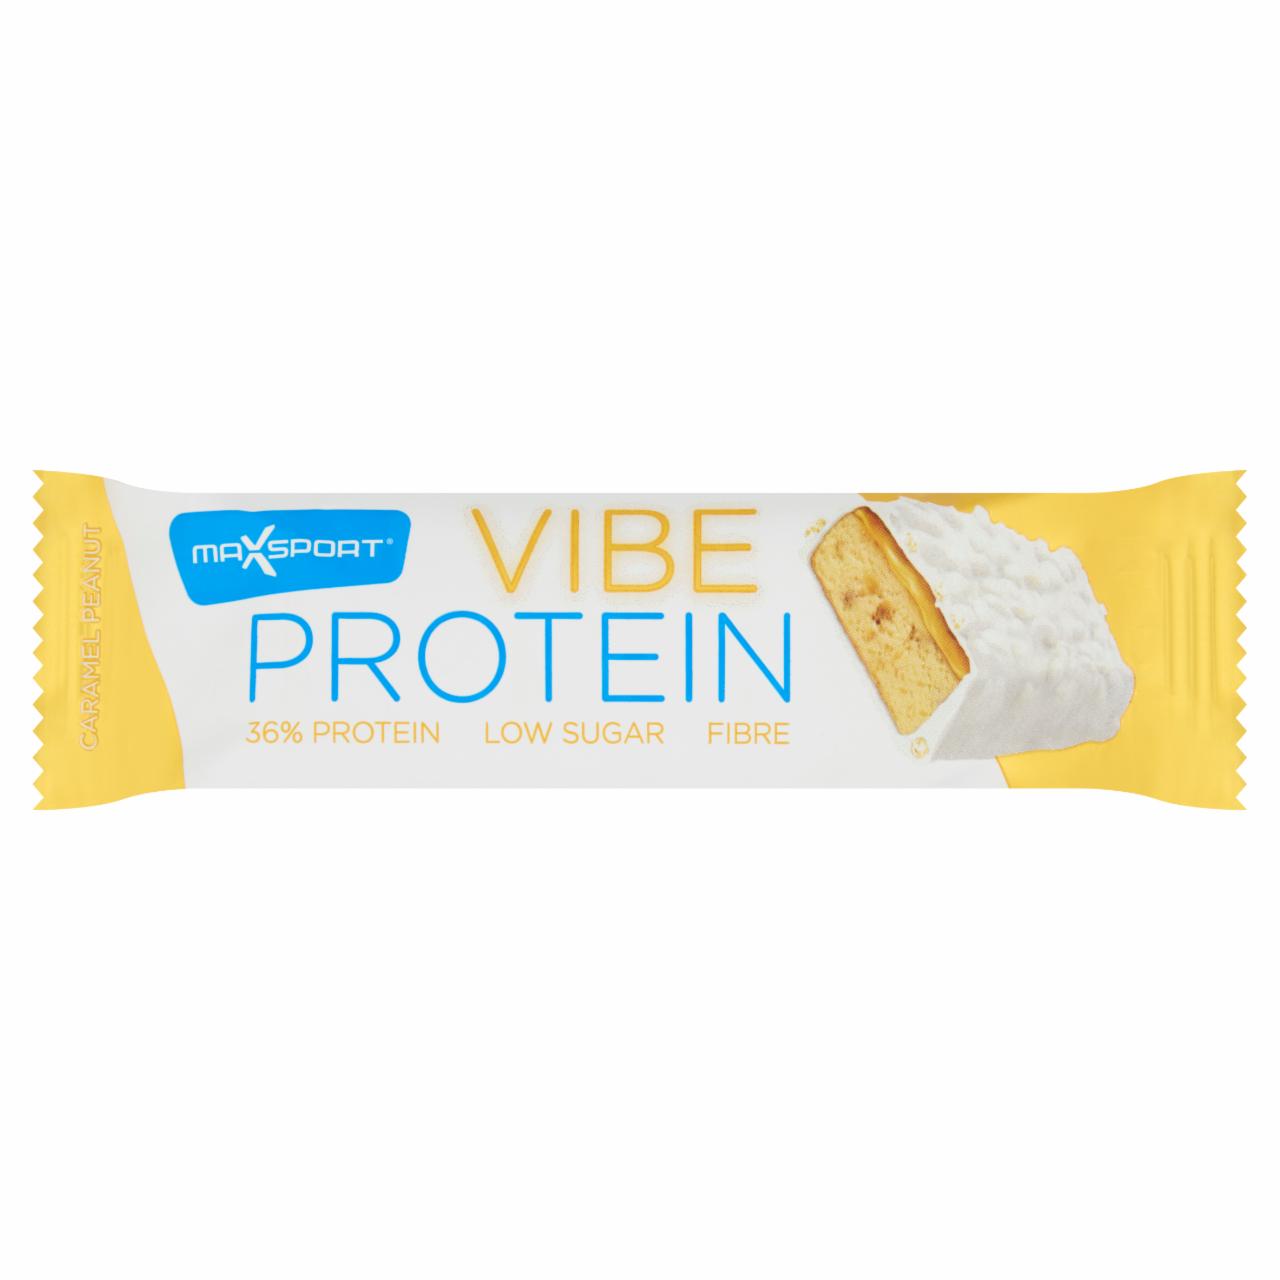 Képek - MaxSport Protein Vibe fehér csokoládés, mogyorós-karamelles ízű protein-rudacska édesítőszerrel 55 g